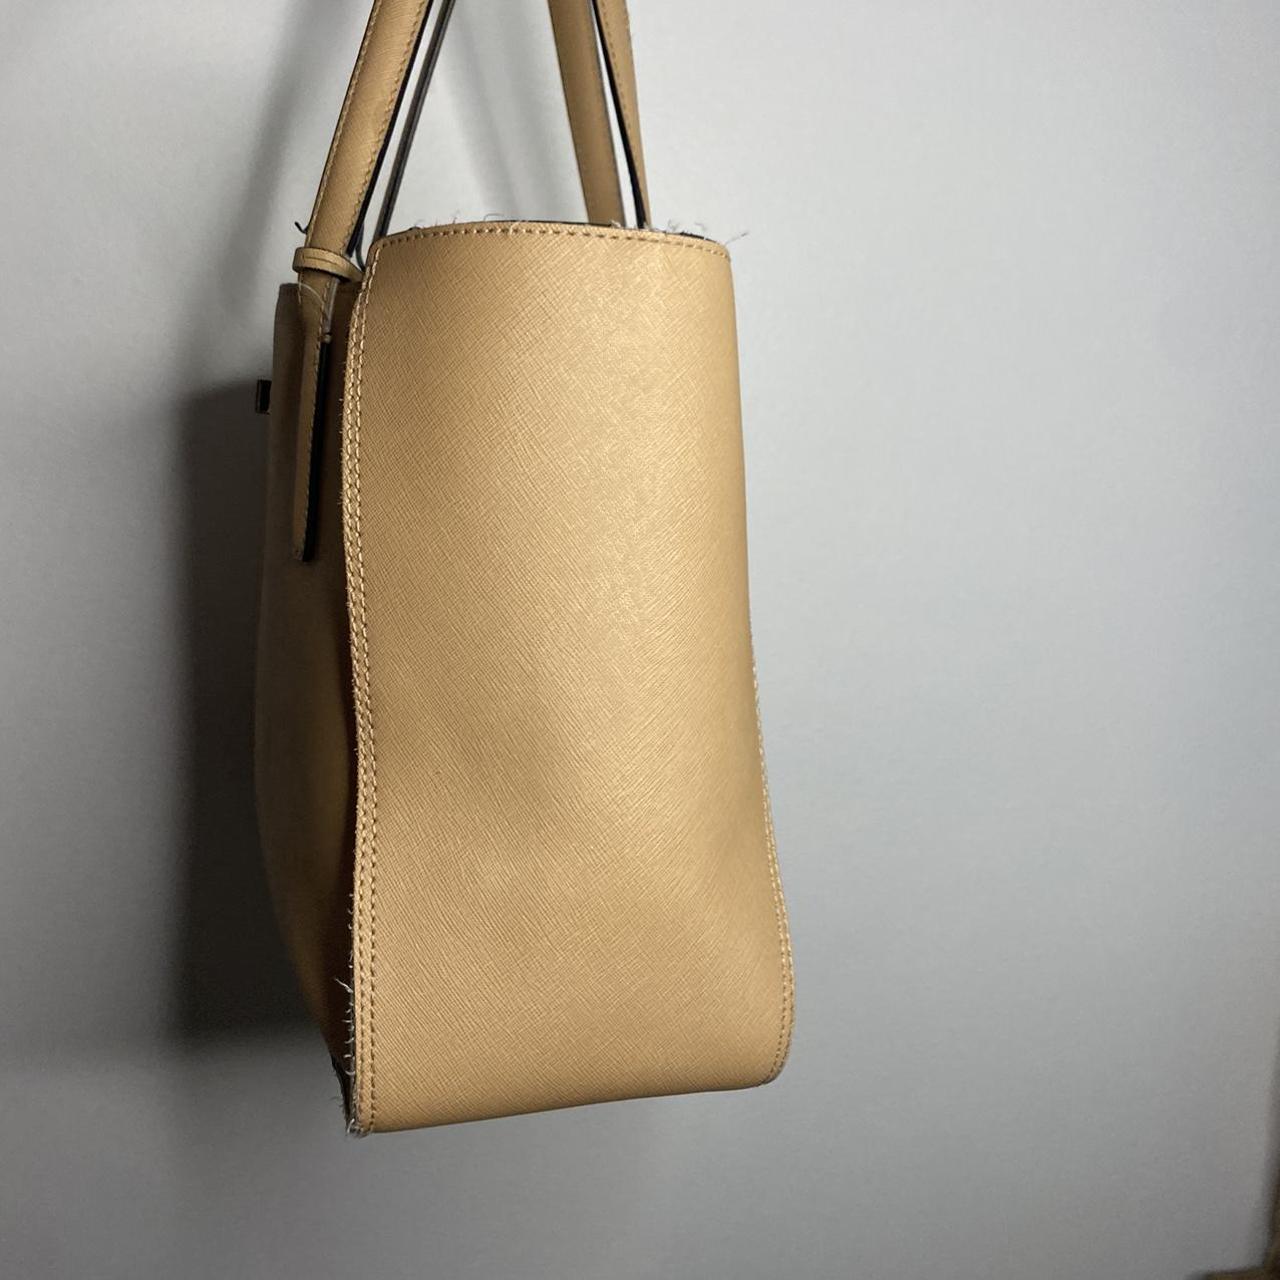 Brown and tan Calvin Klein shoulder bag. Gold - Depop